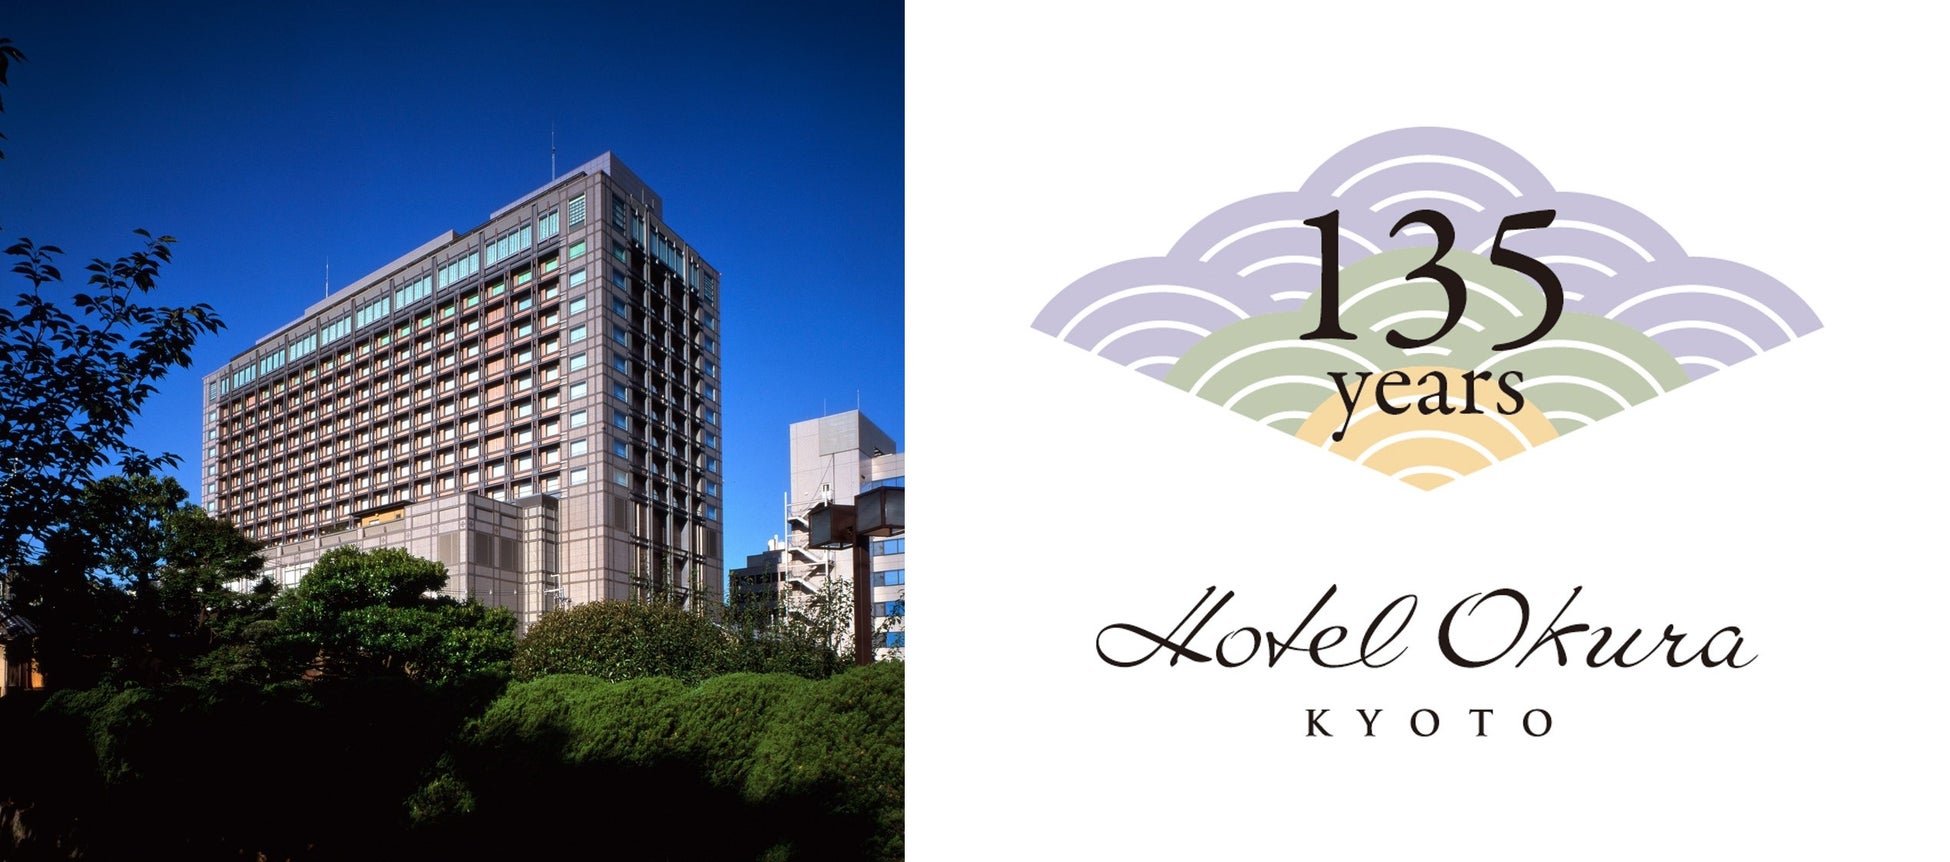 ホテルオークラ京都 外観と創業135周年記念ロゴ